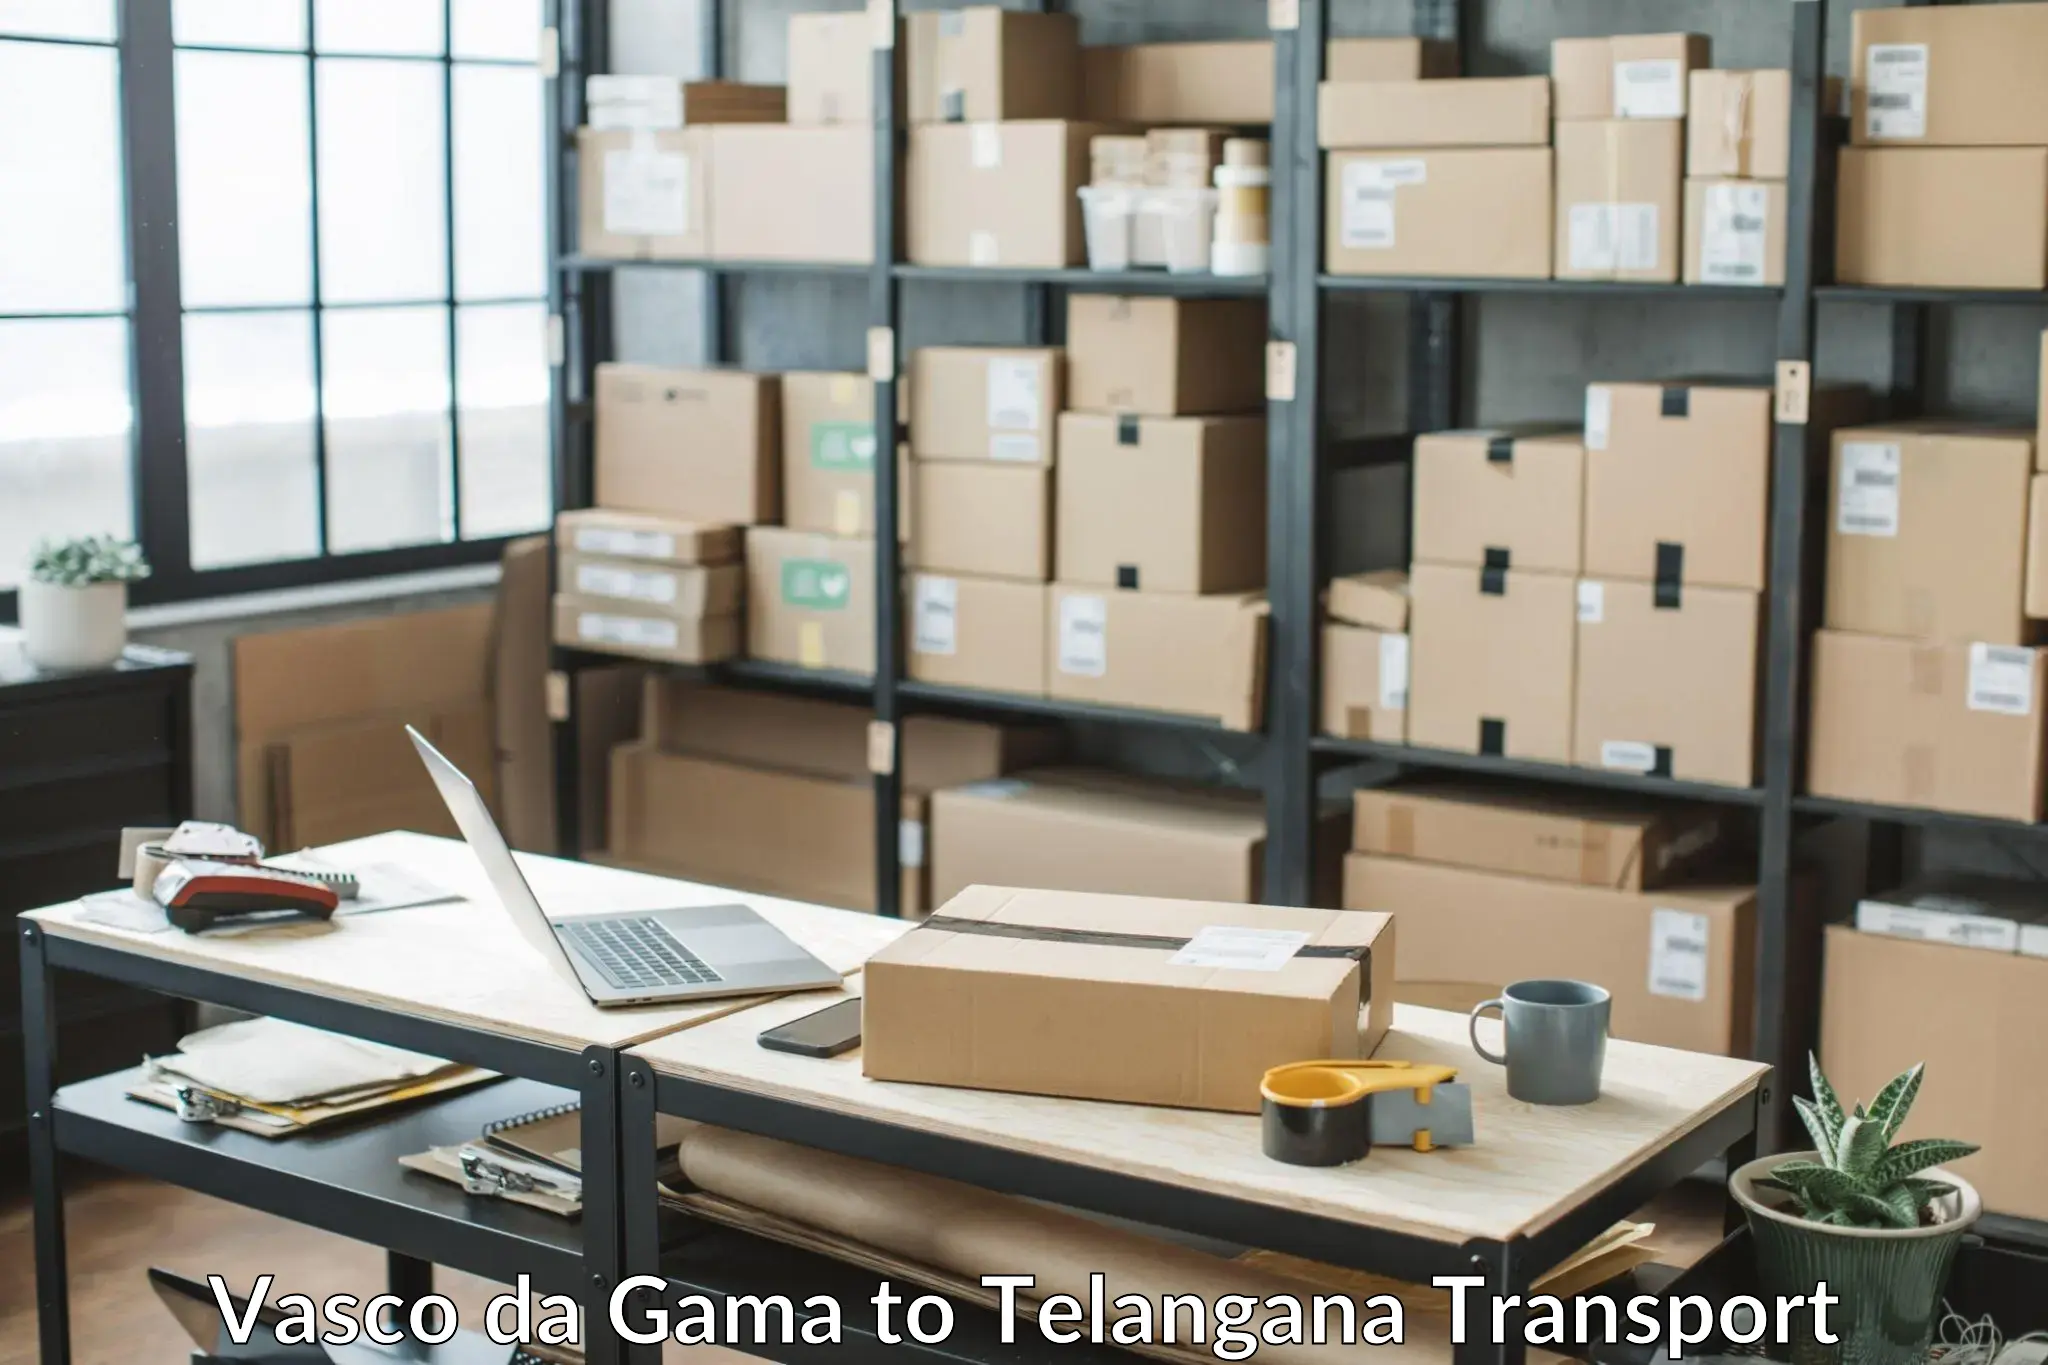 Container transportation services in Vasco da Gama to Ibrahimpatnam